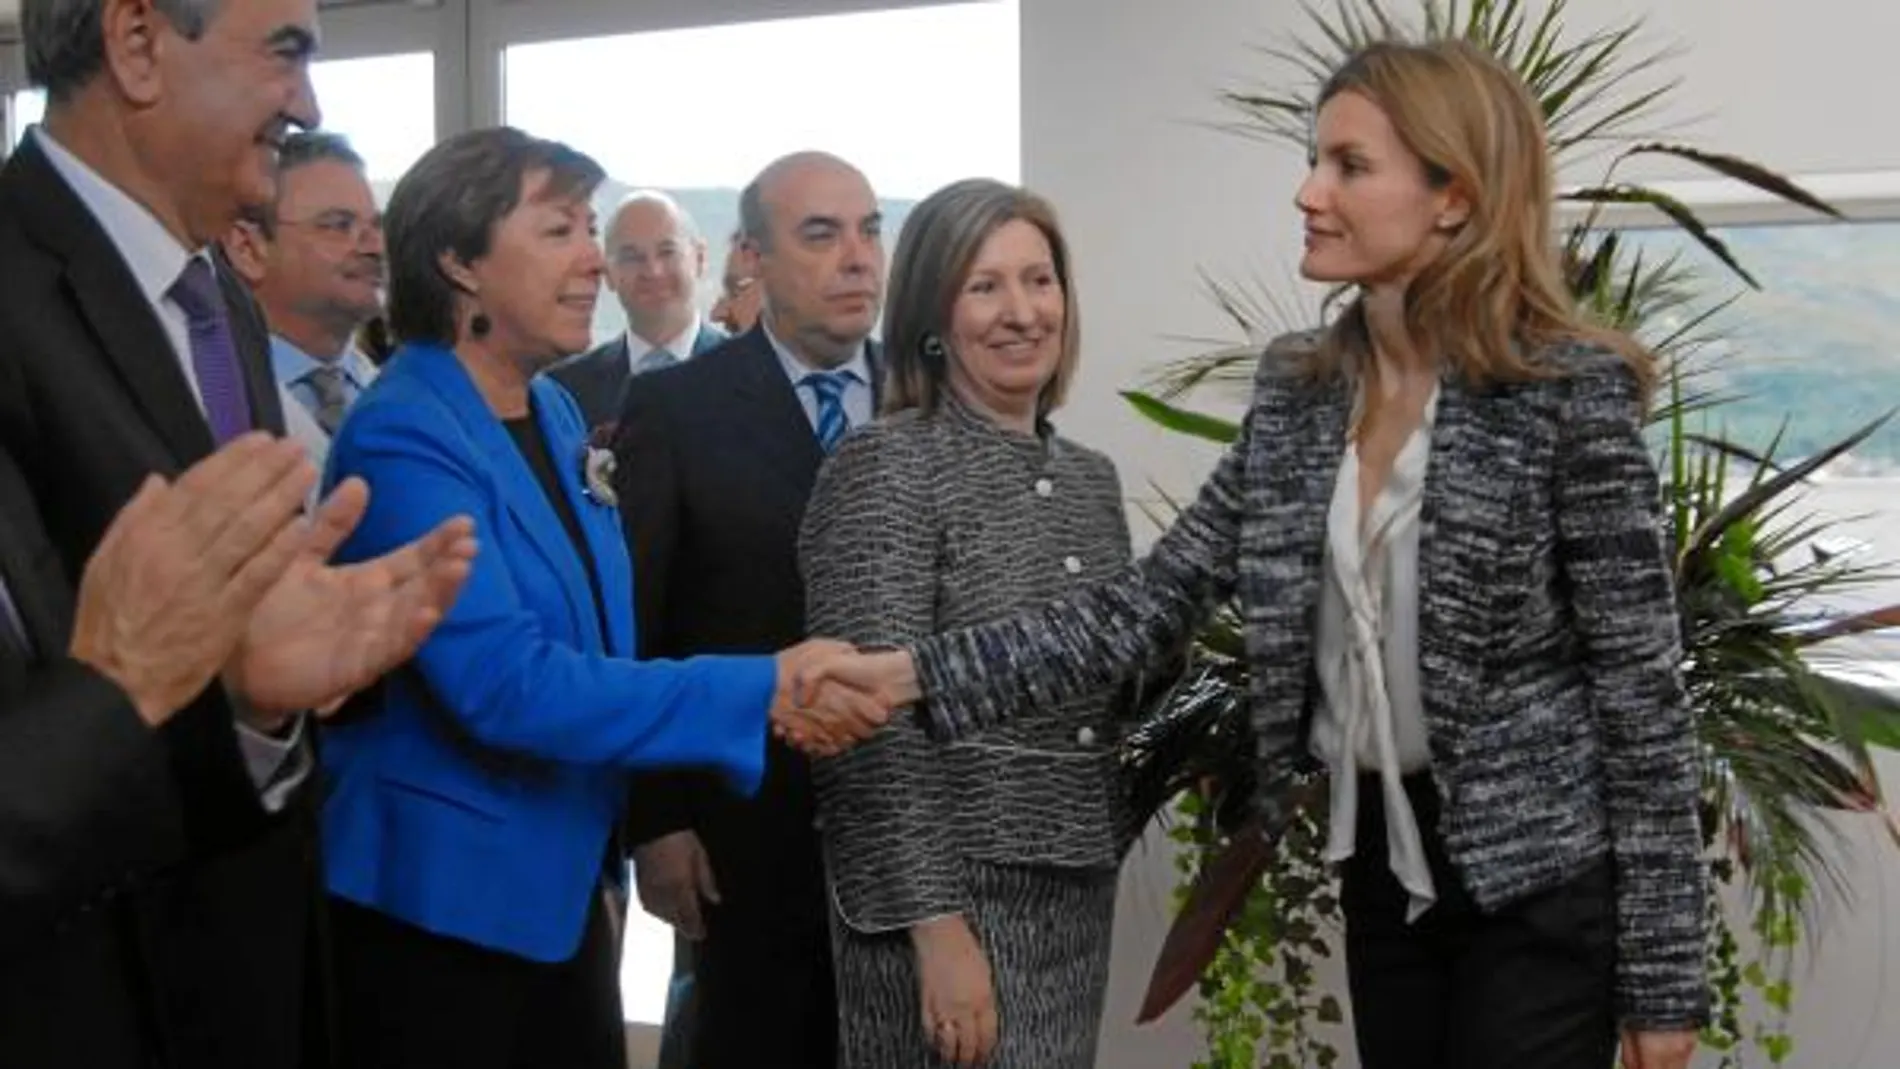 La Princesa de Asturias saludó a las autoridades asistentes